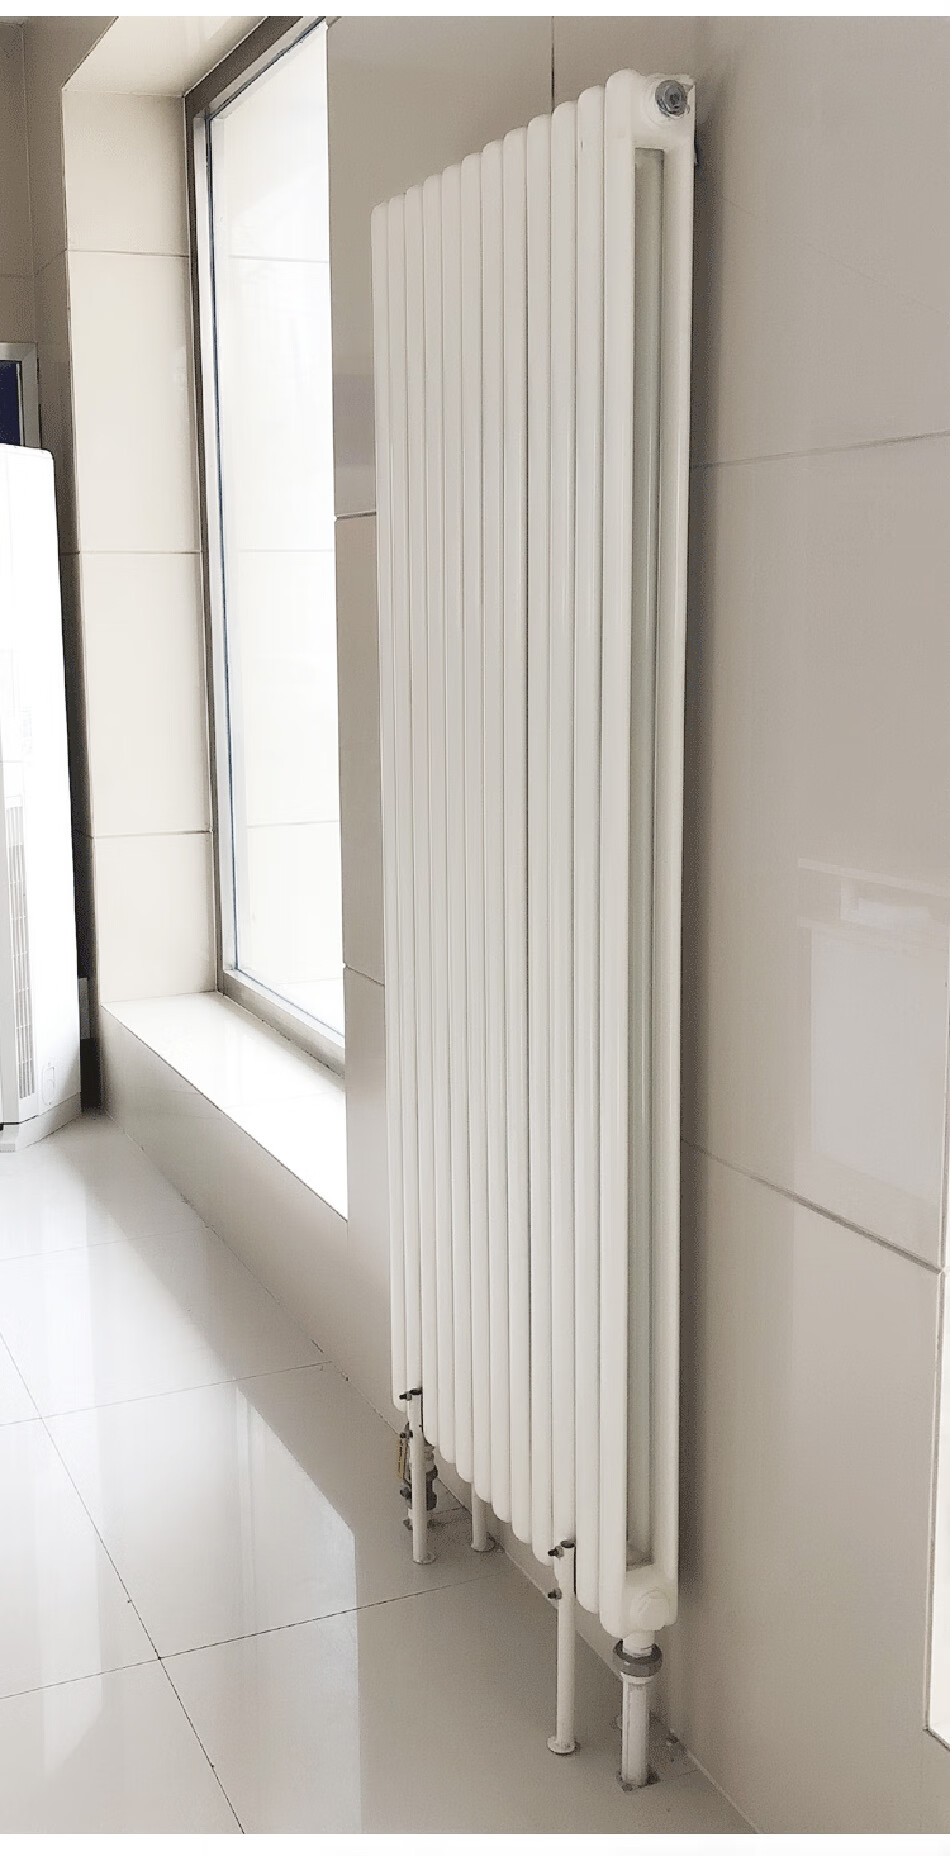 暖气片落地支架 暖气片家用地支架钢制散热器固定架底托薄墙用落地腿